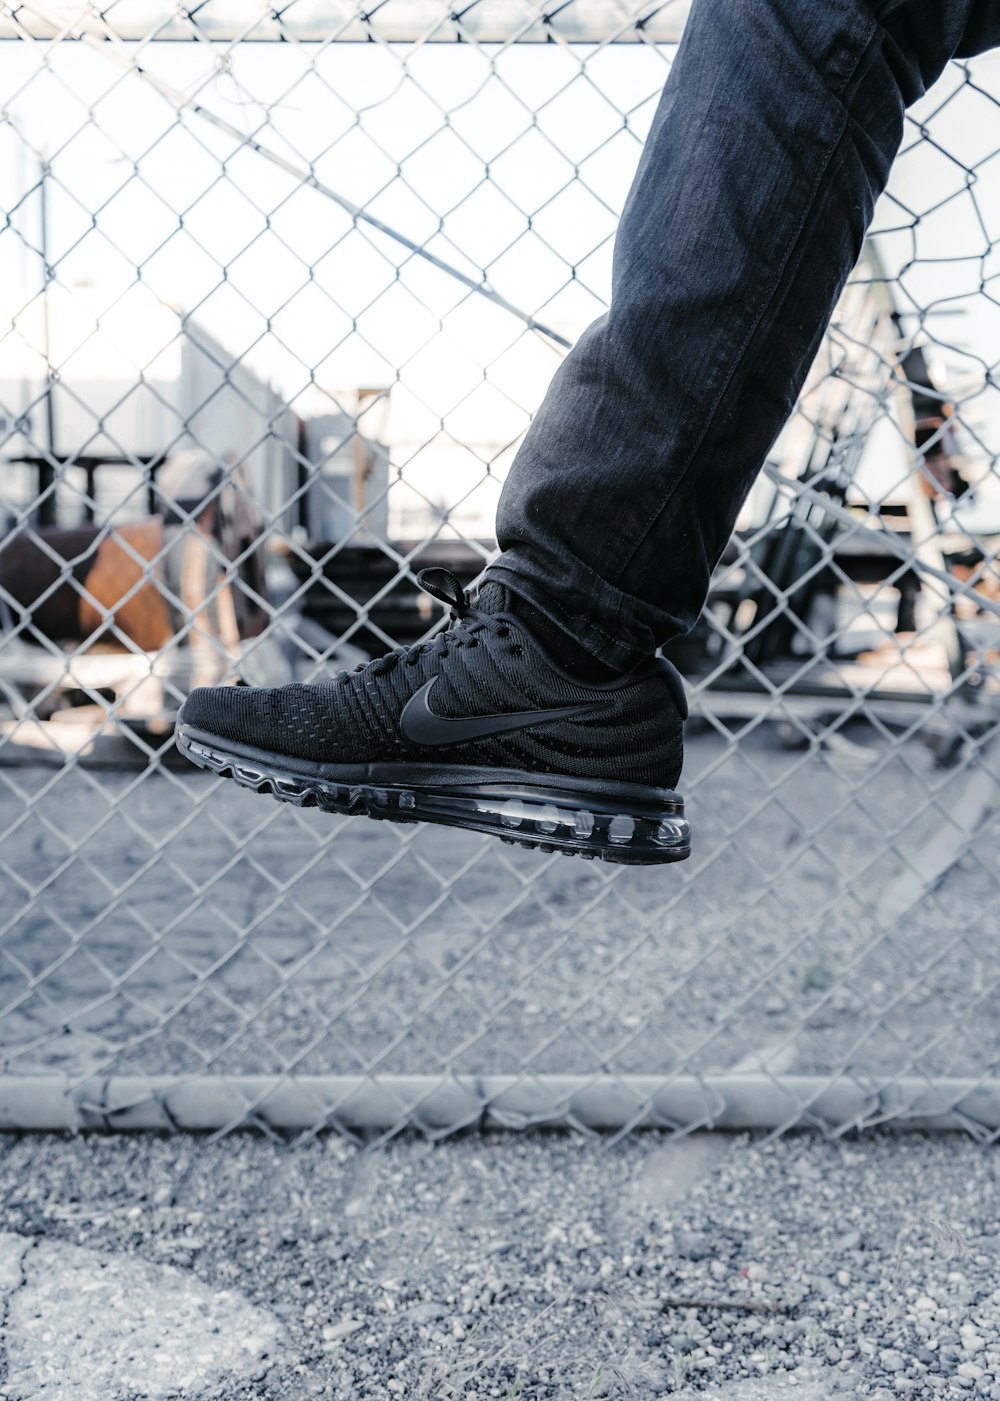 Foto Persona con zapatillas de running Nike negras – Imagen Estados Unidos  gratis en Unsplash